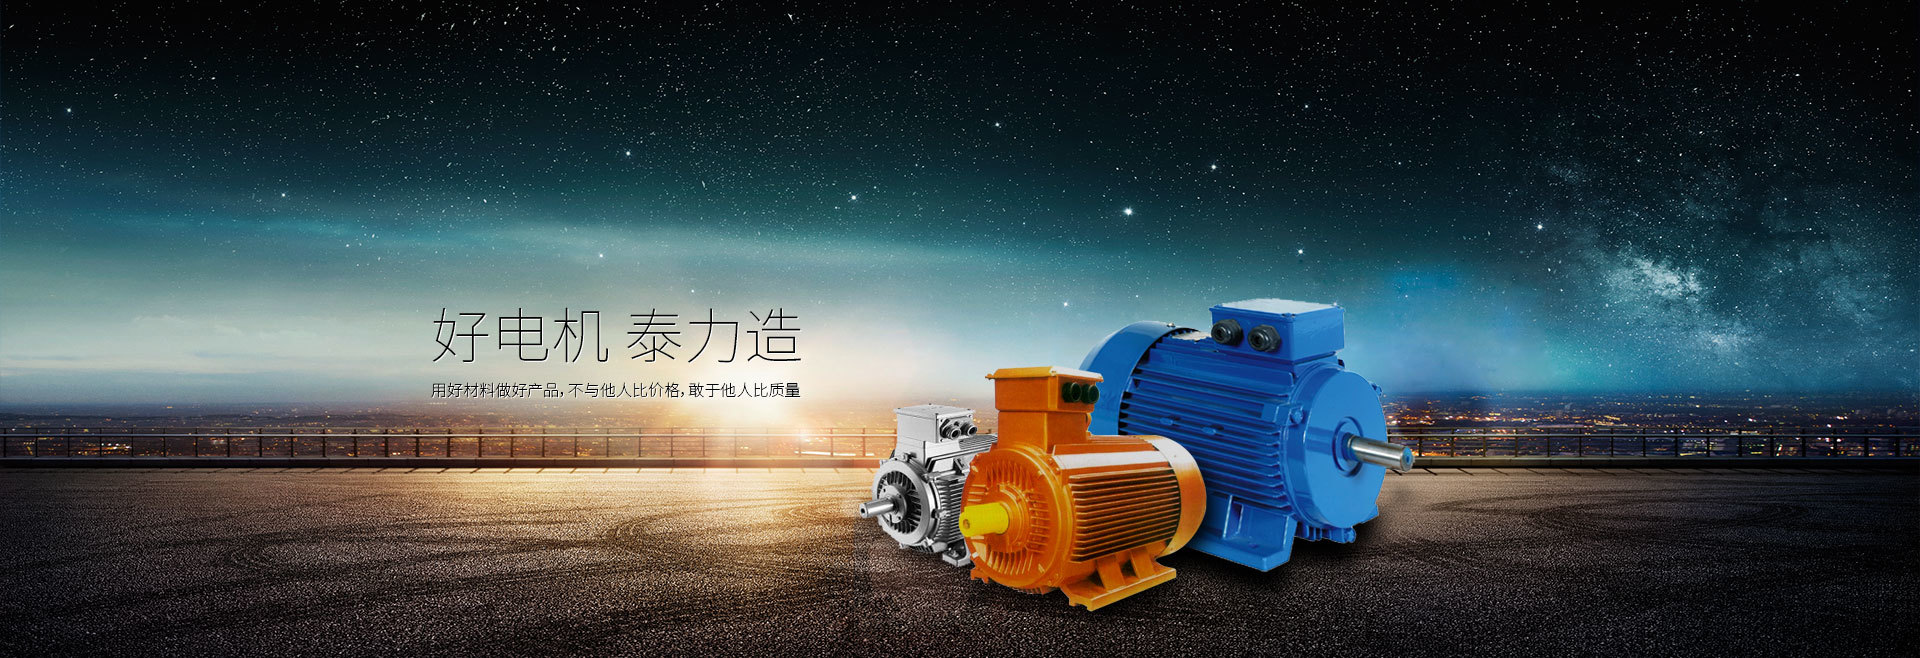 香港大红鹰论坛网是YE5电动机生产厂家、YBX5电机厂家、一级能效电机厂家